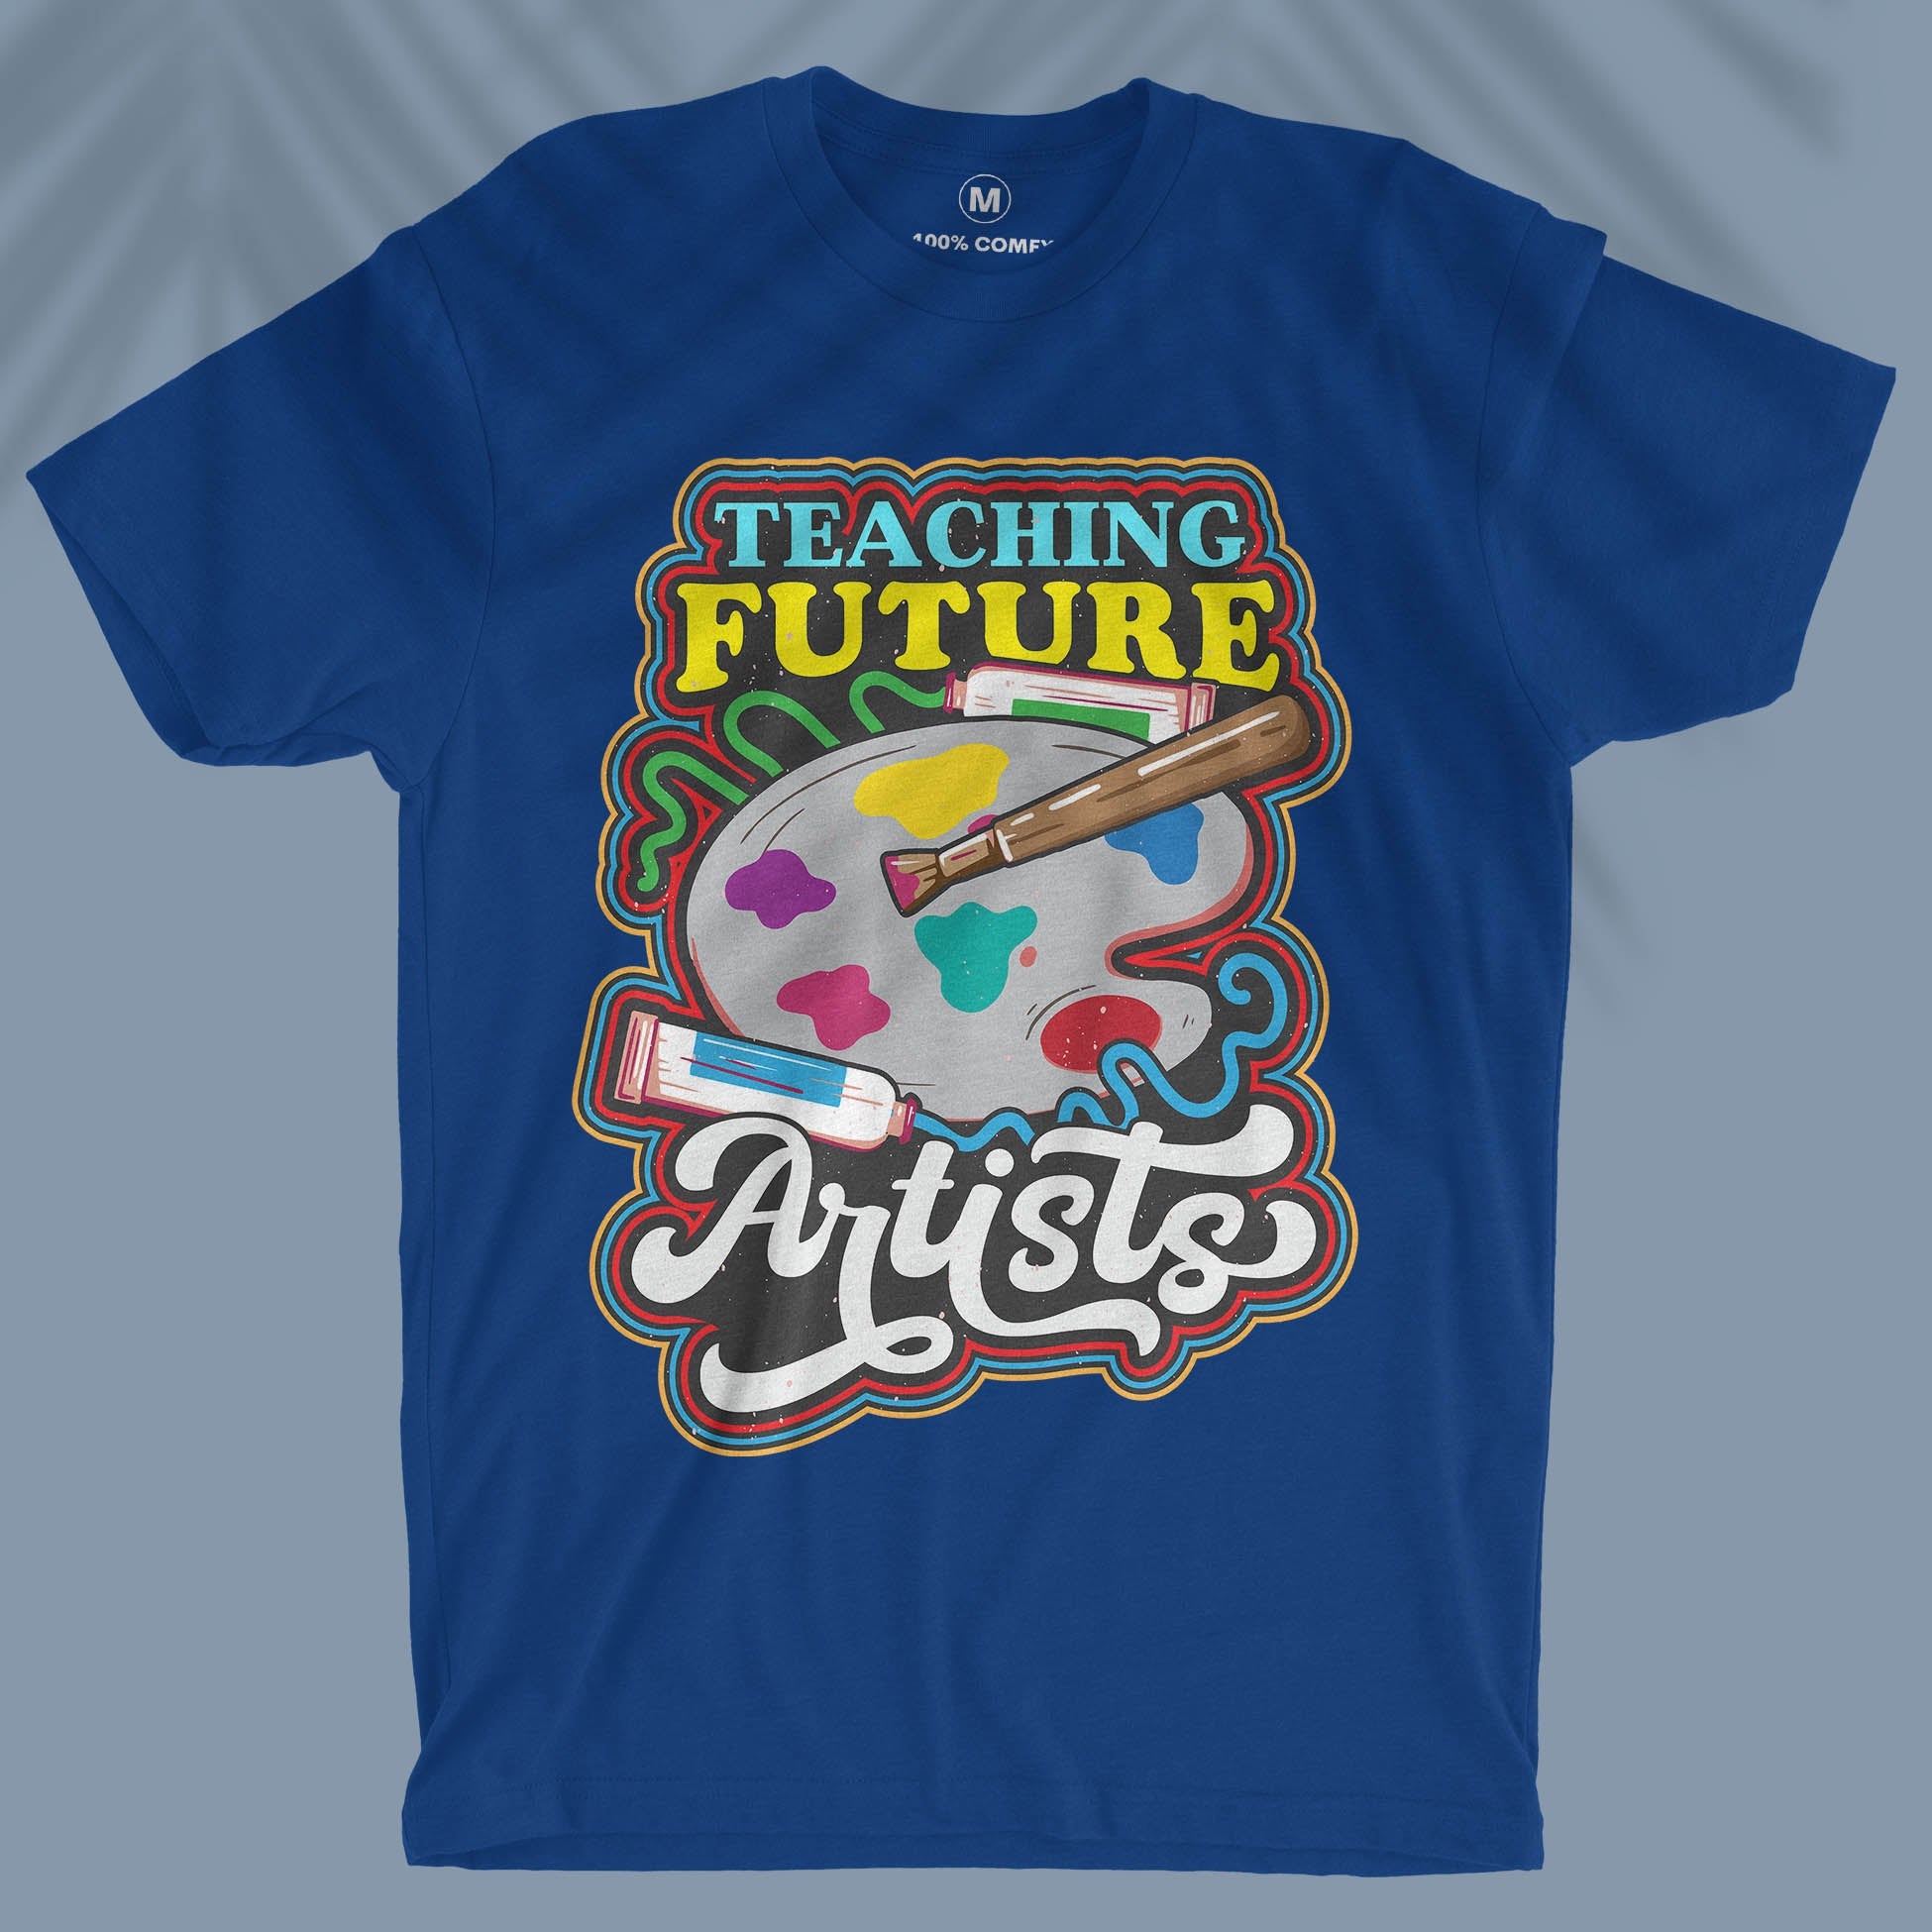 Teaching Future Artists  - Unisex T-shirt For Art Teachers